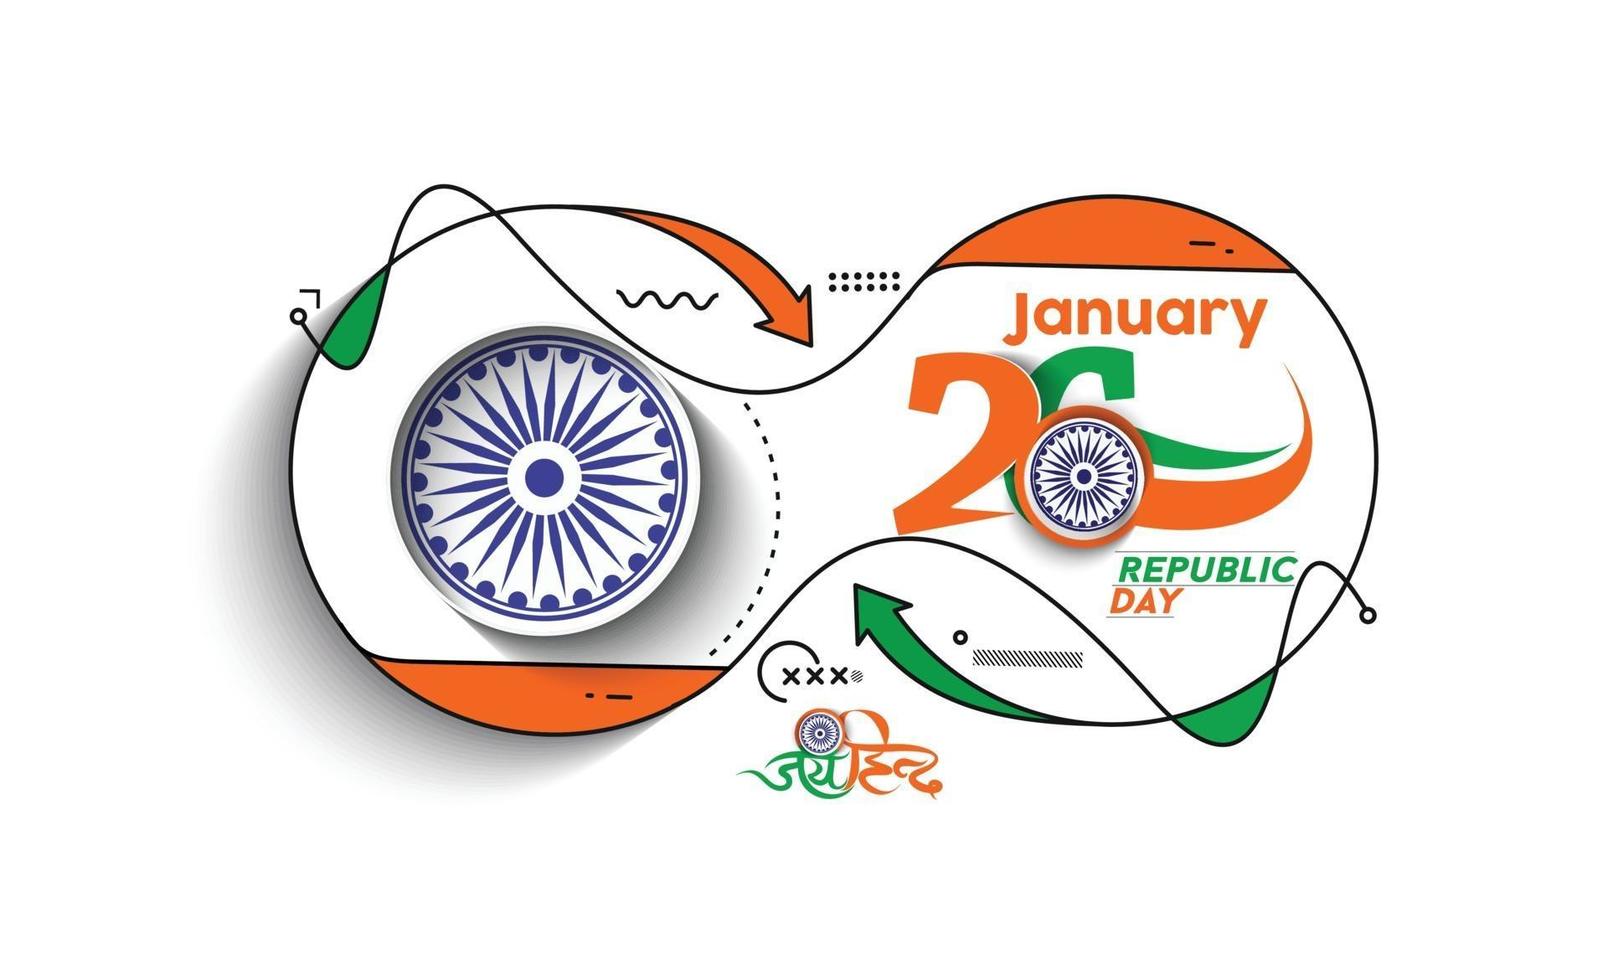 concepto del día de la república india con texto 26 de enero. diseño de ilustración de vector abstracto.